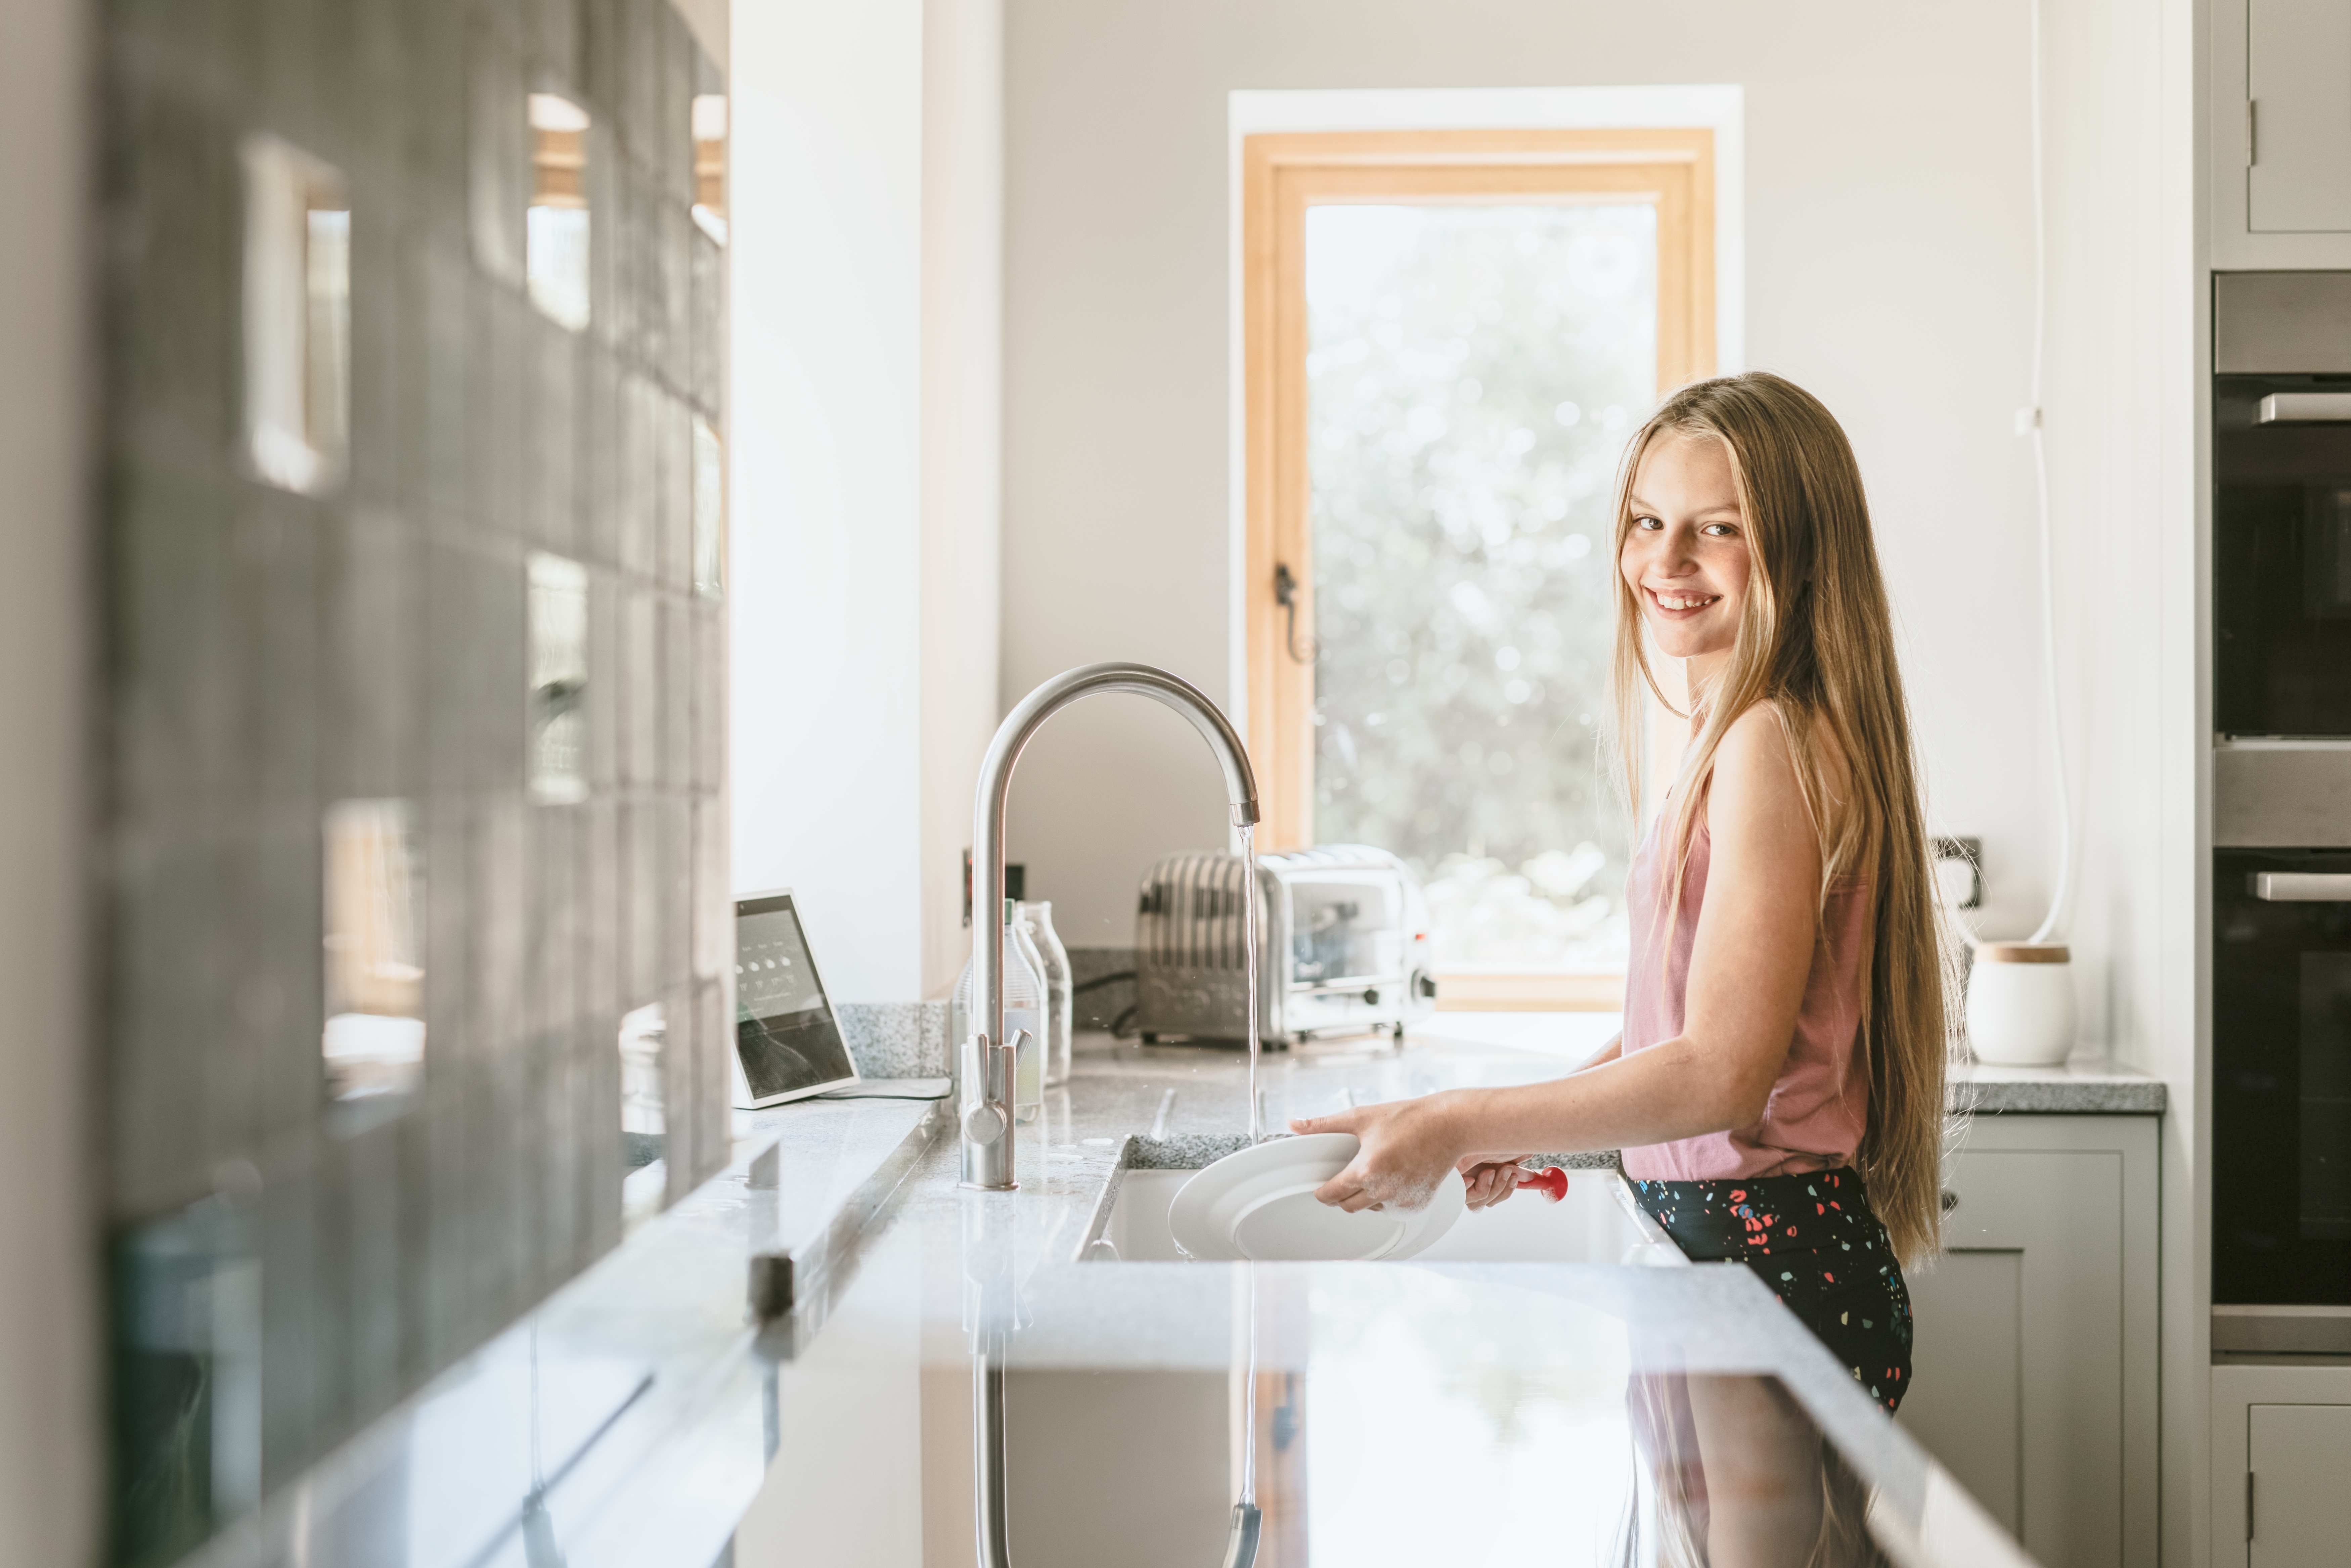 Une fille fait la vaisselle | Source : Shutterstock